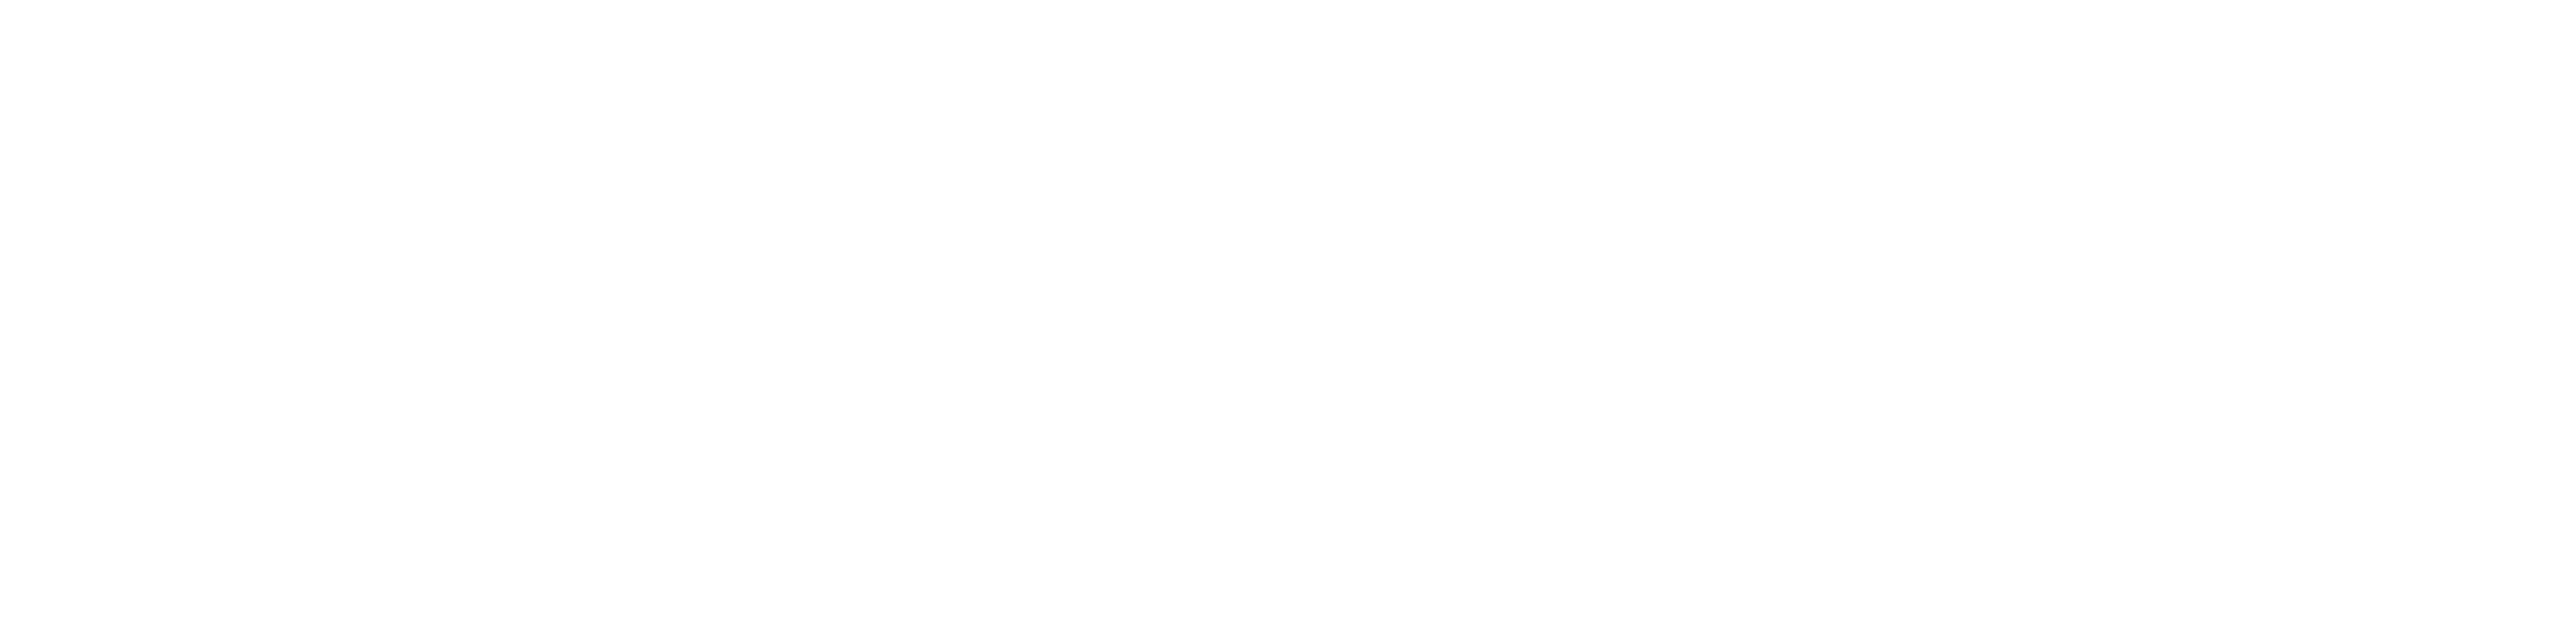 Mannheim Steamroller 30/40 Live